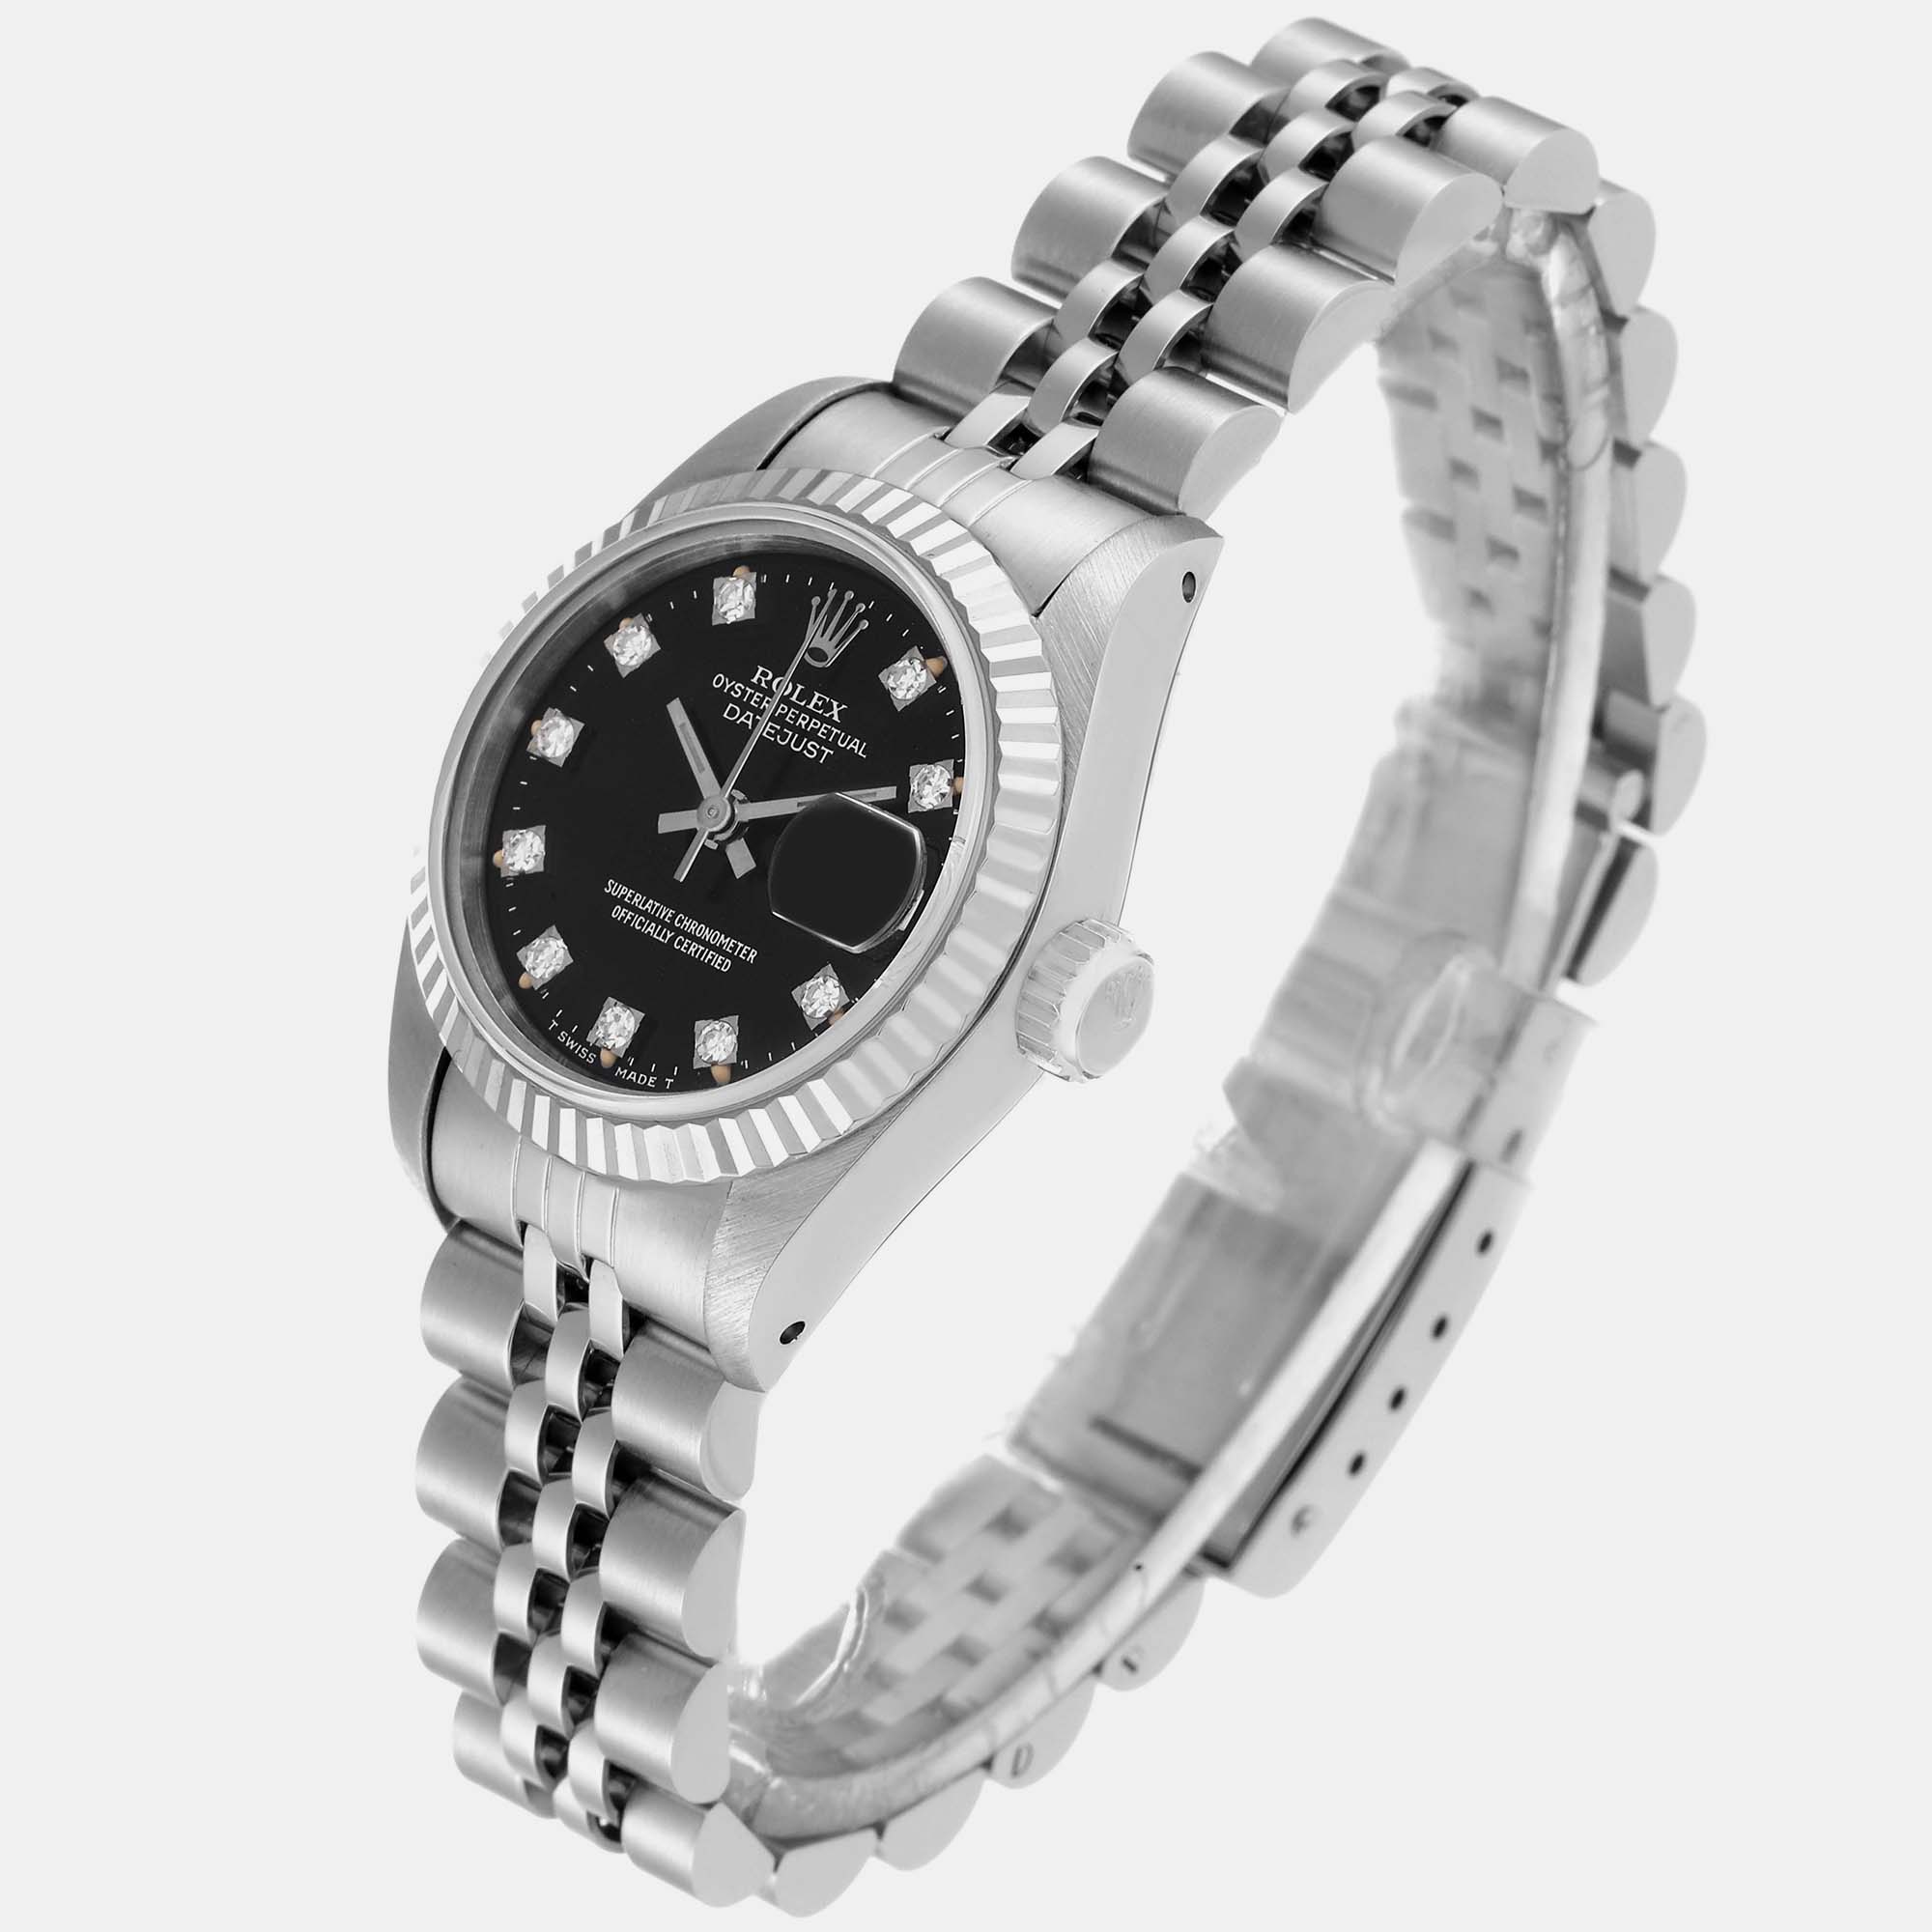 Rolex Datejust Steel White Gold Black Diamond Dial Ladies Watch 69174 26 Mm